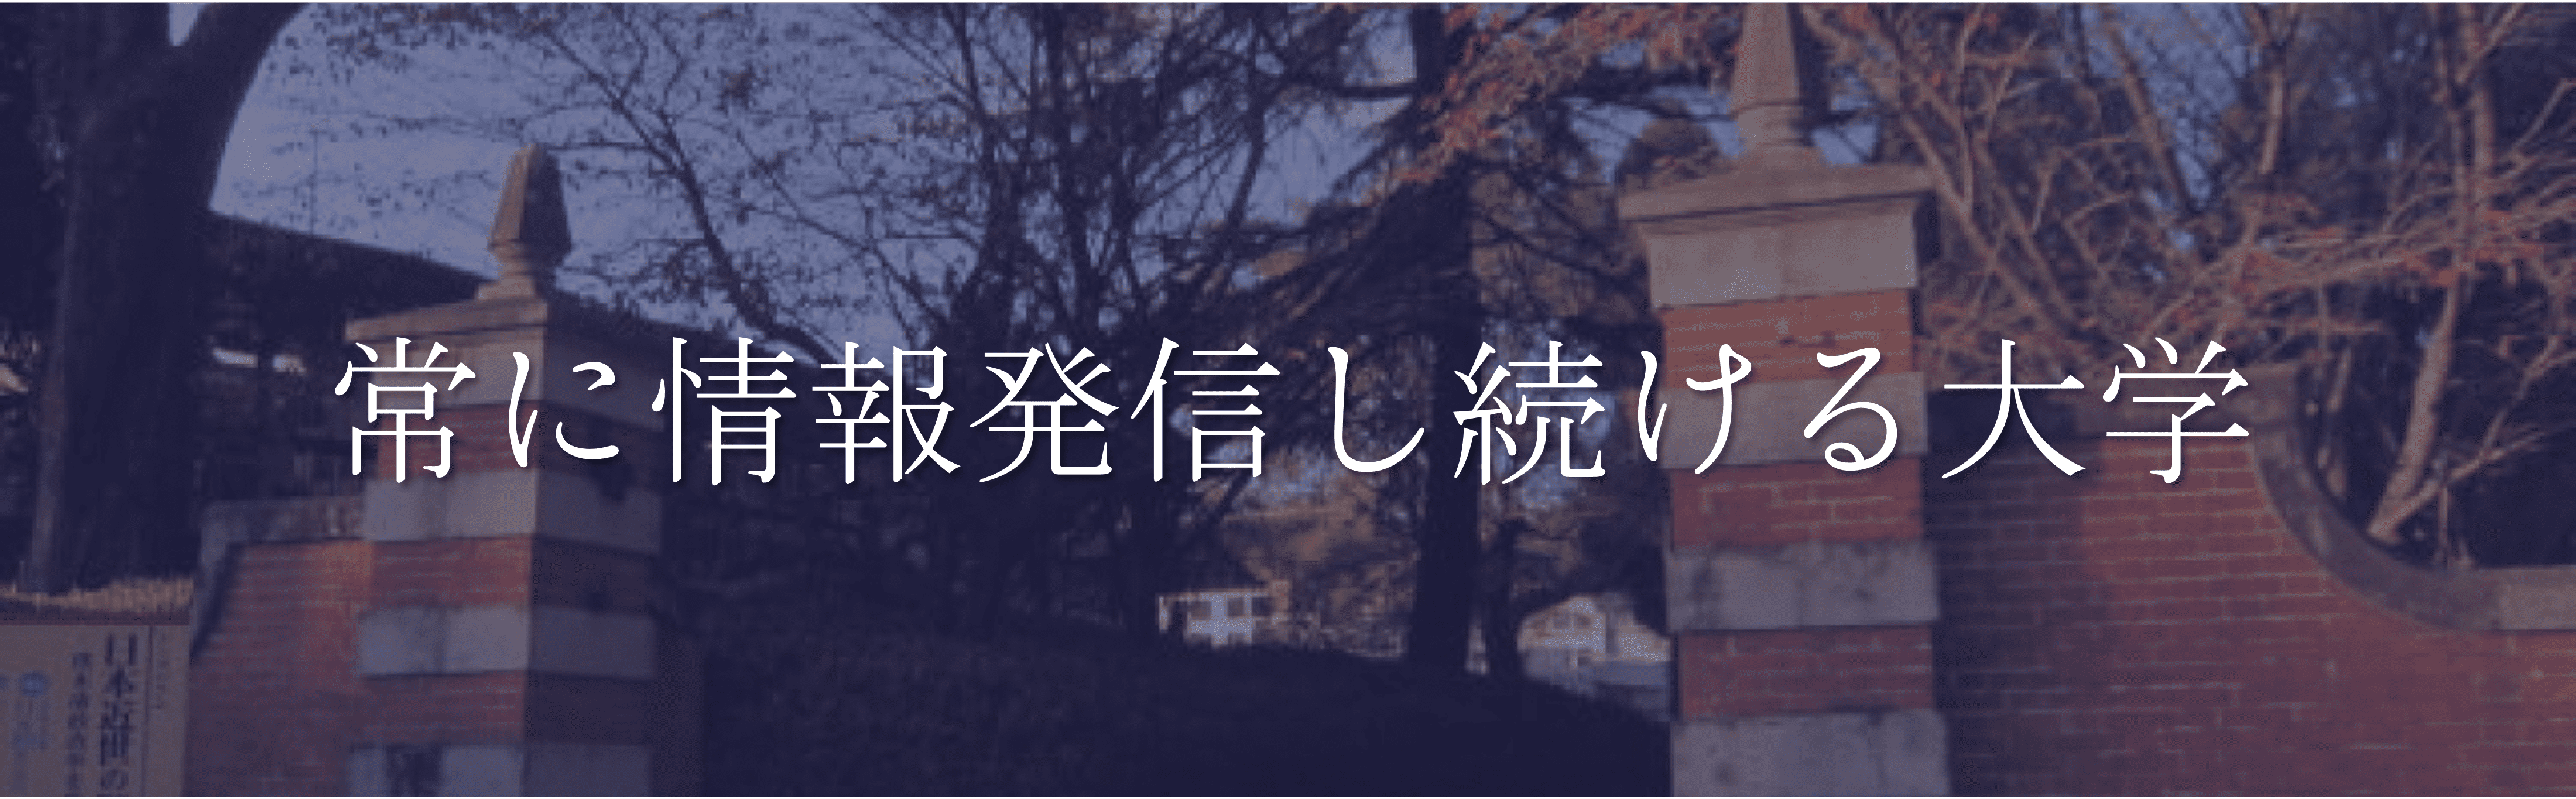 熊本大学のモットー